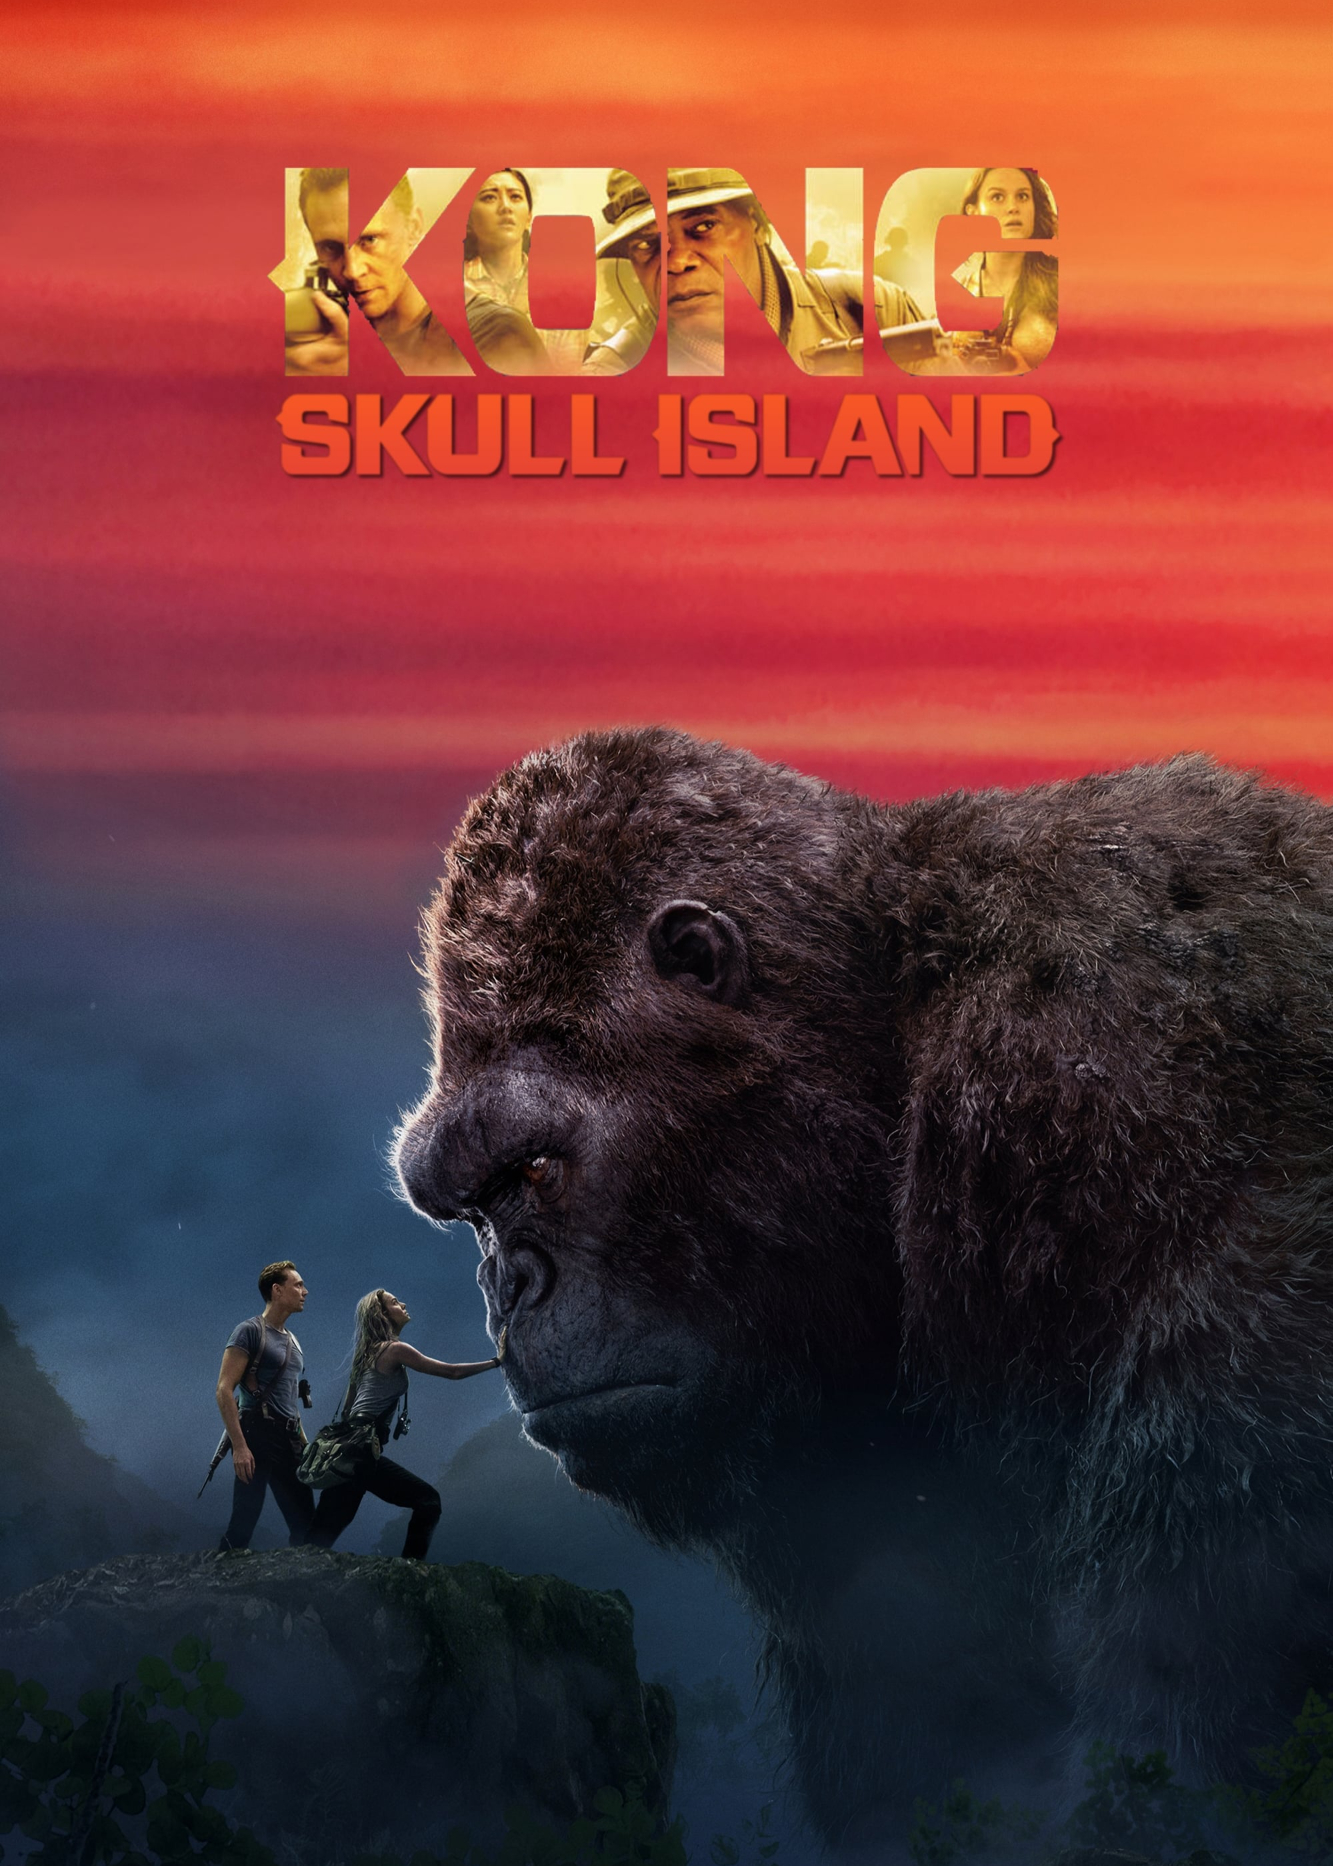 Poster Phim Kong: Đảo Đầu Lâu (Kong: Skull Island)